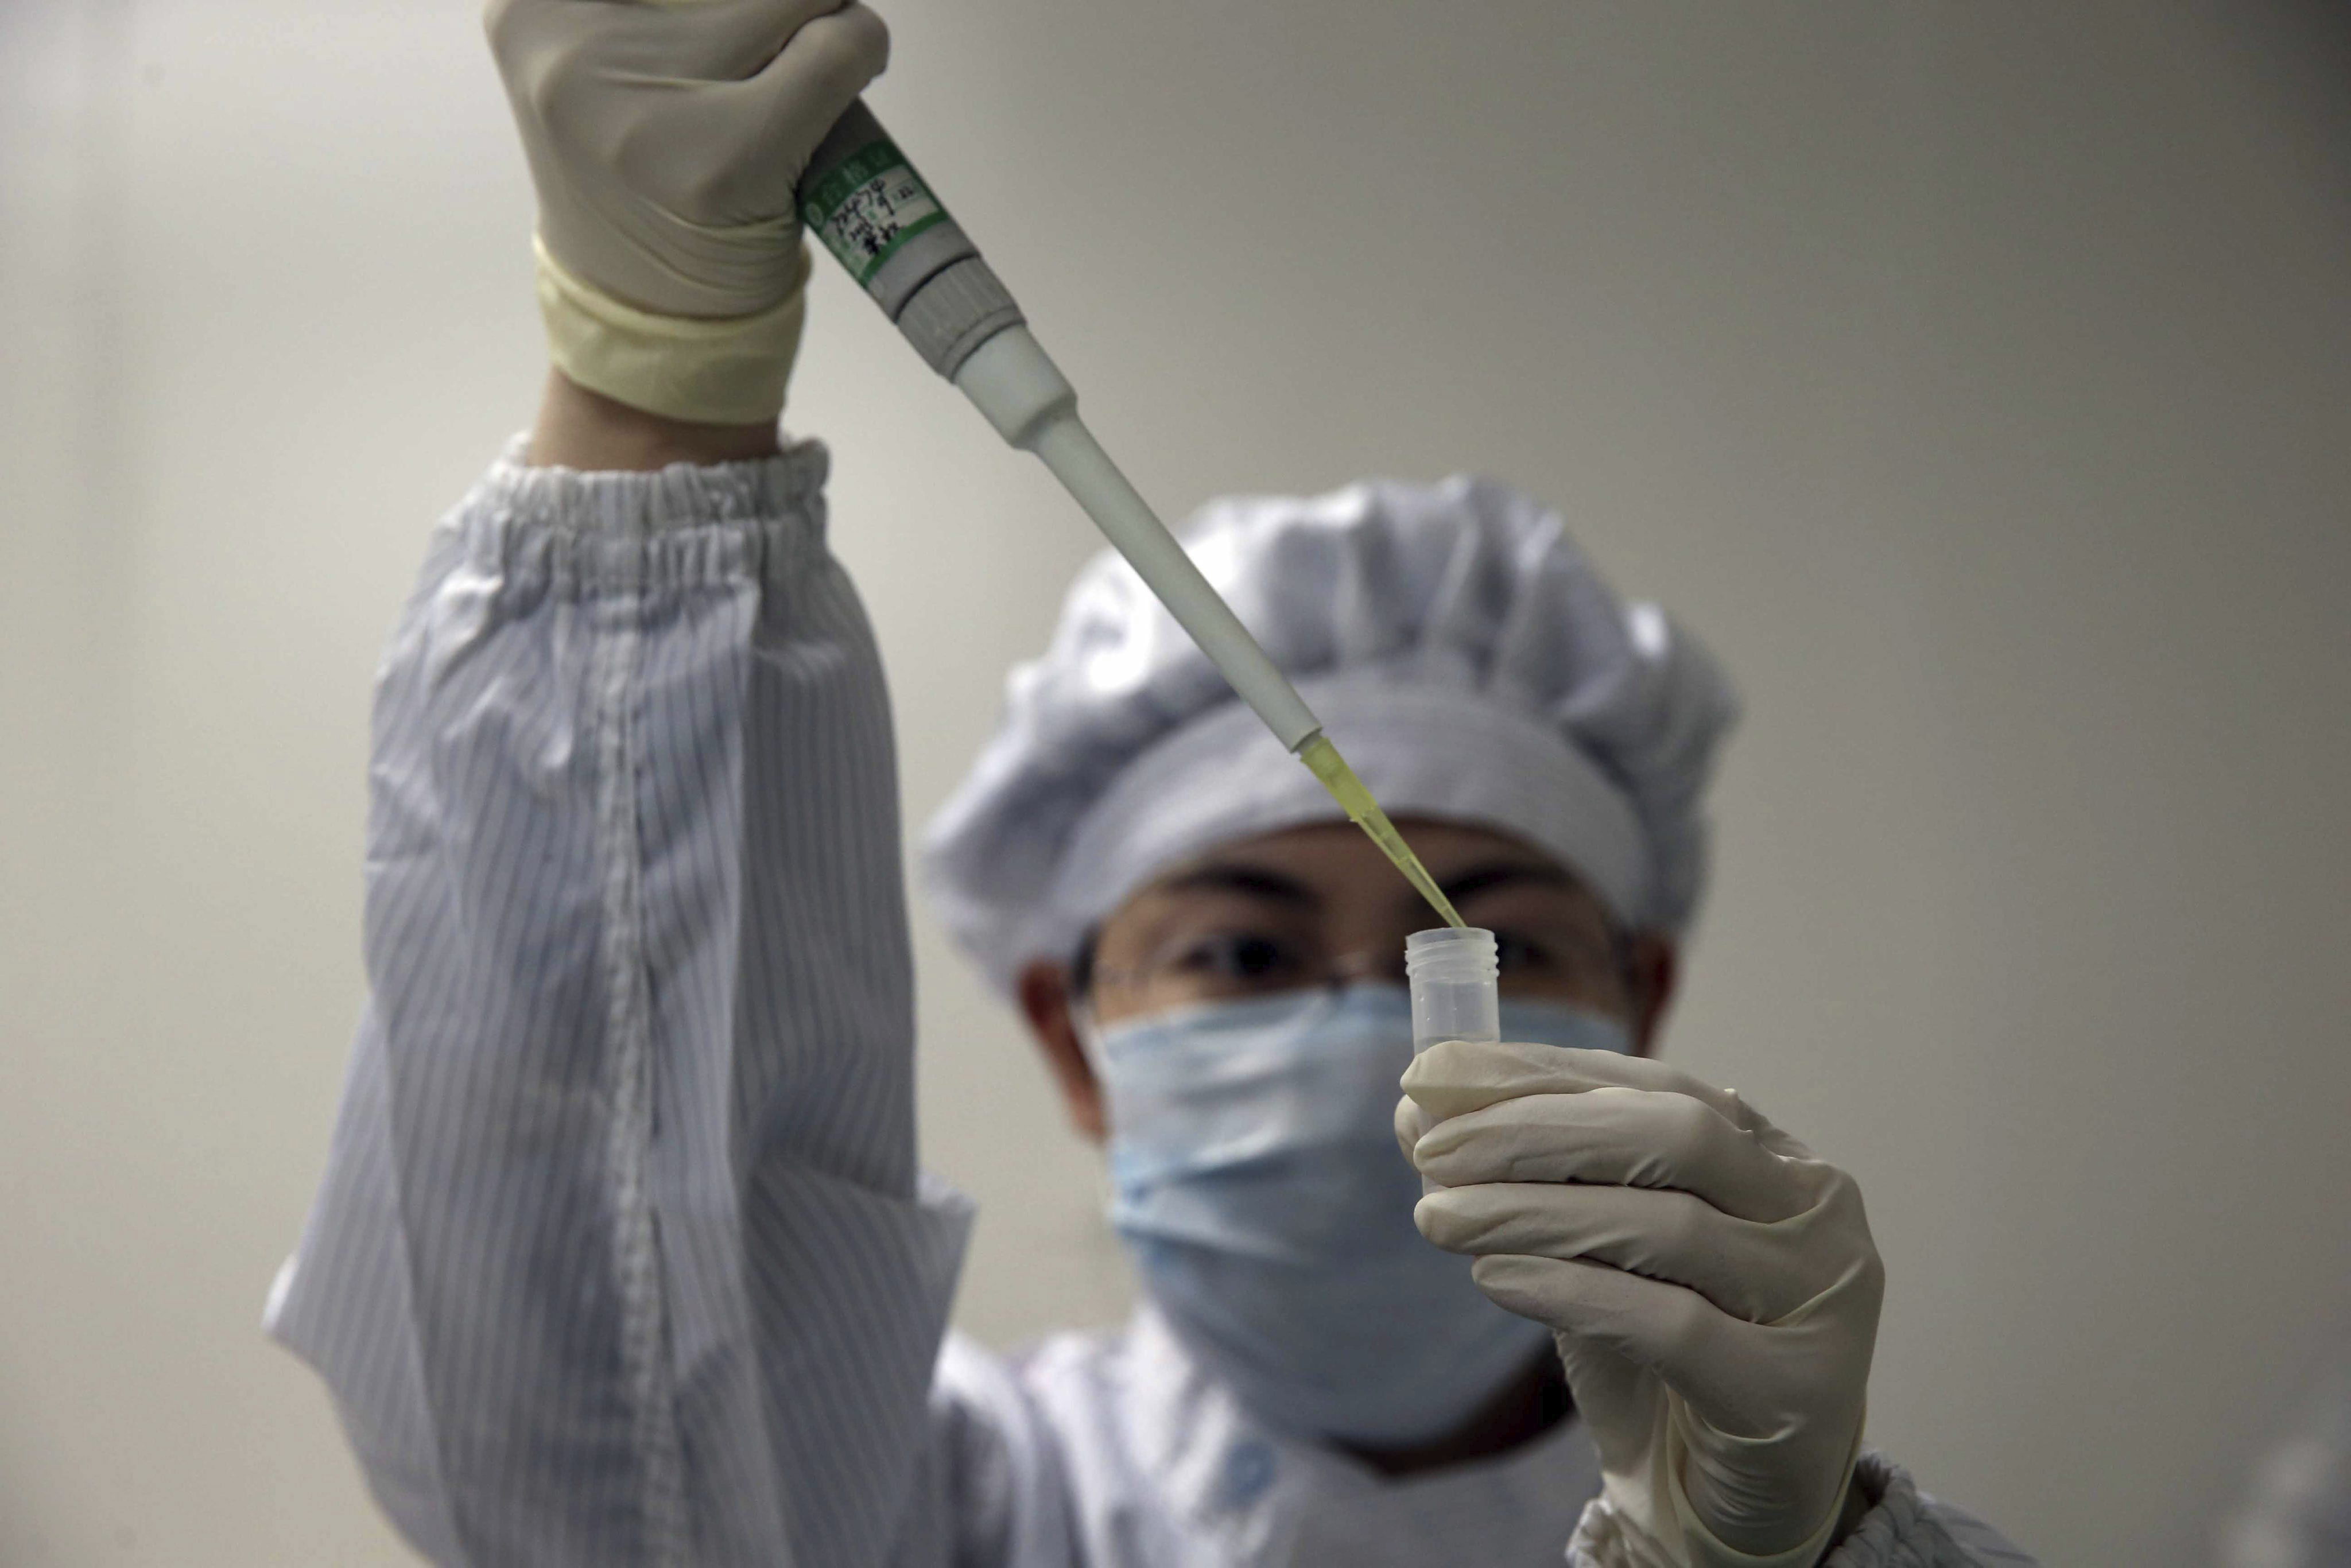 La gripe aviar H7N9 produce cambios rápidos y progresivos en los pulmones